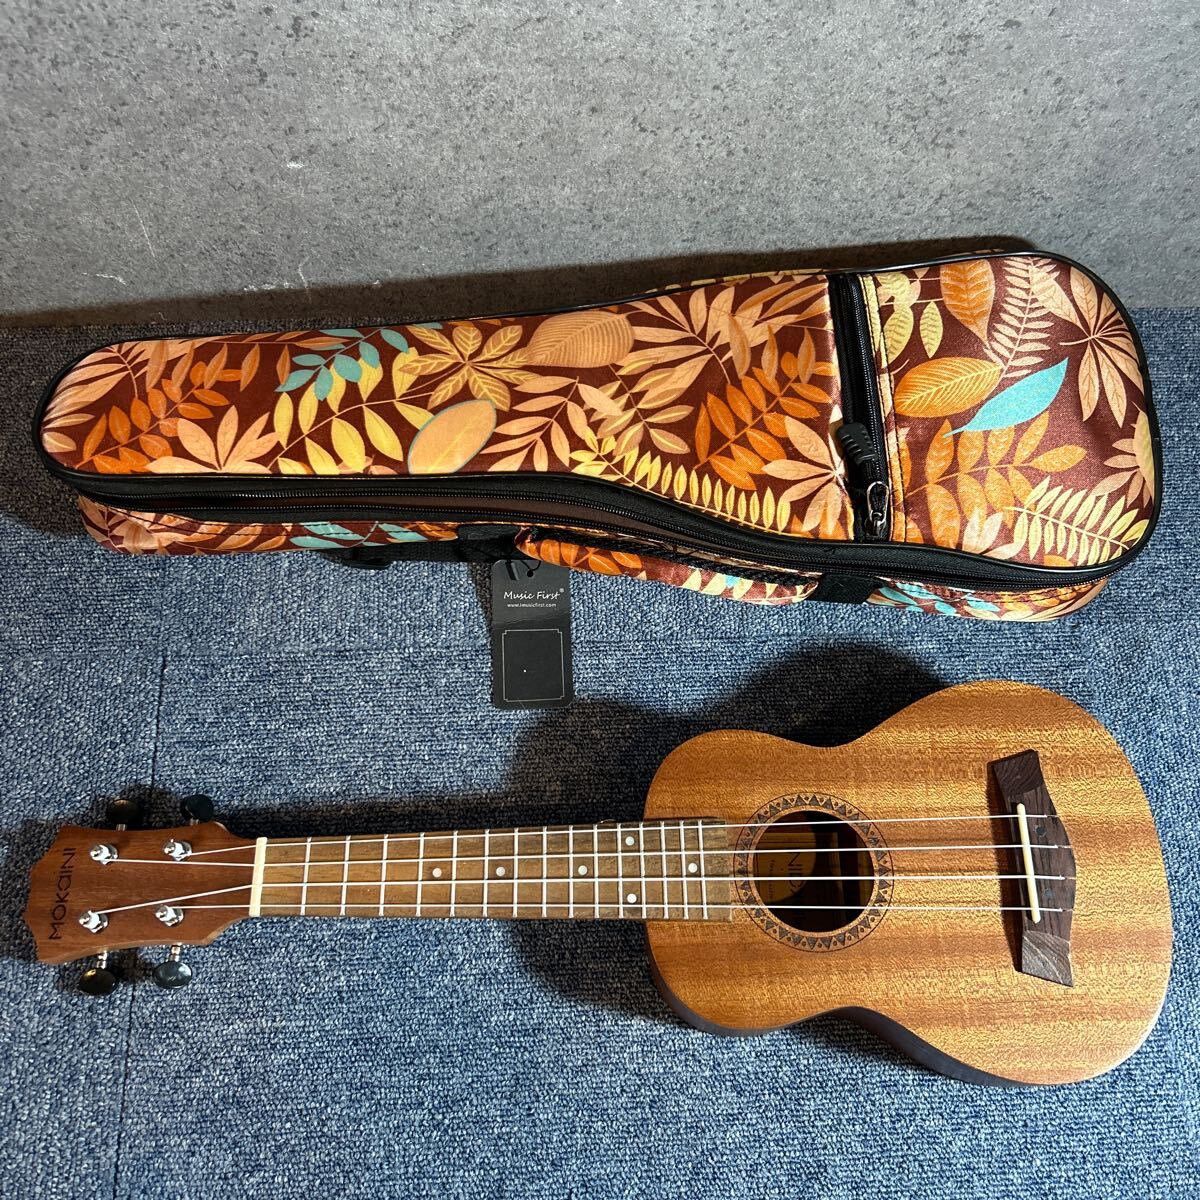 Mokaini ウクレレ High quality ukulele model12 ケース付き 音出し確認済みの画像1